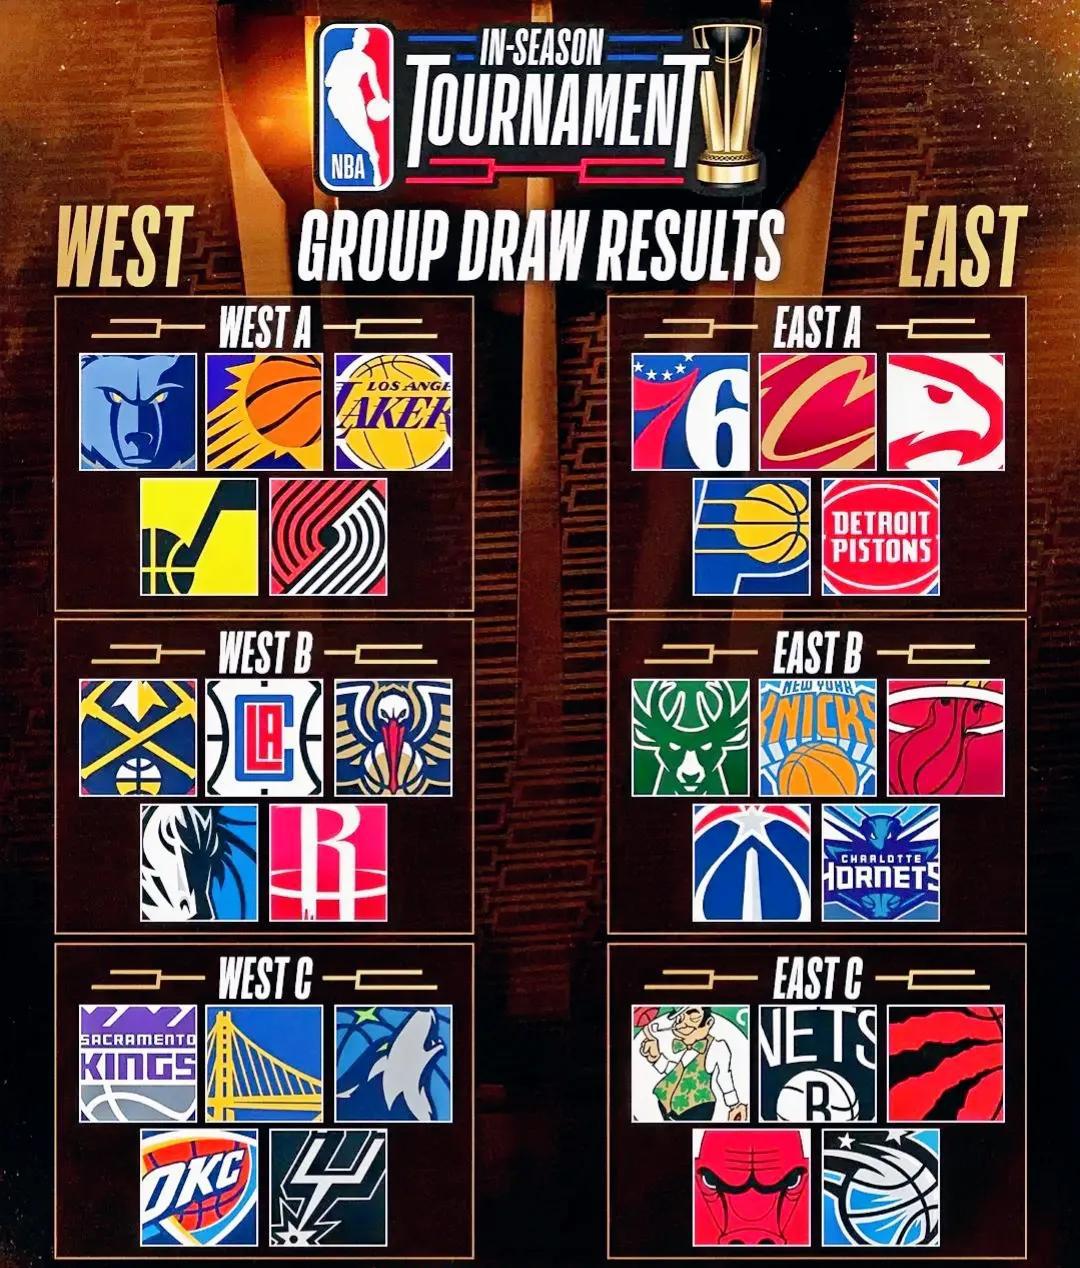 NBA季中锦标赛小组出线预测：

东部A组：湖人队出线
预测原因：詹姆斯非常看重(1)